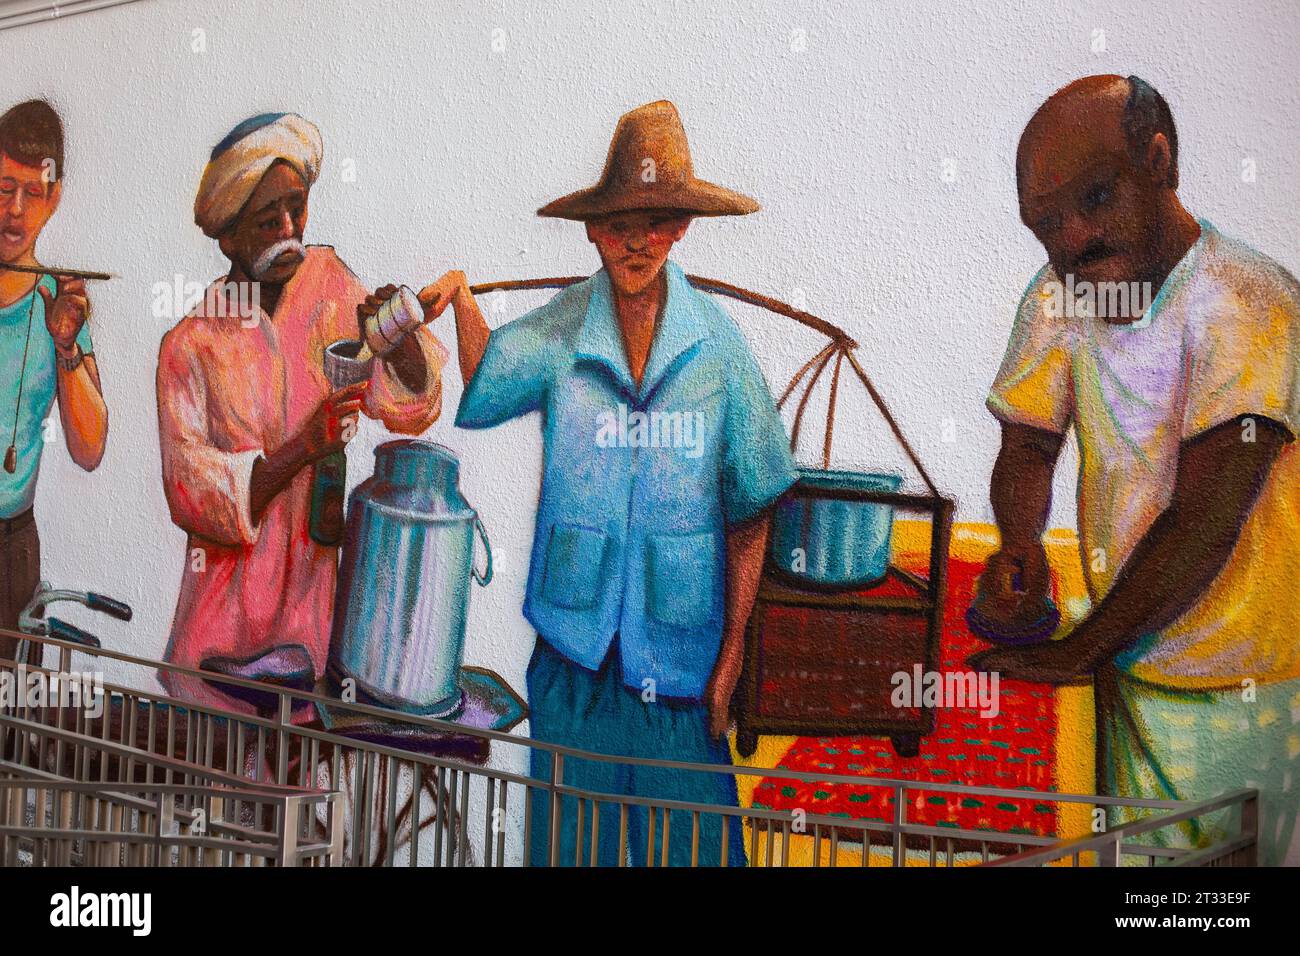 Peinture murale en couleur artistique représentant des gens dans les vieux métiers, Singapour. Banque D'Images